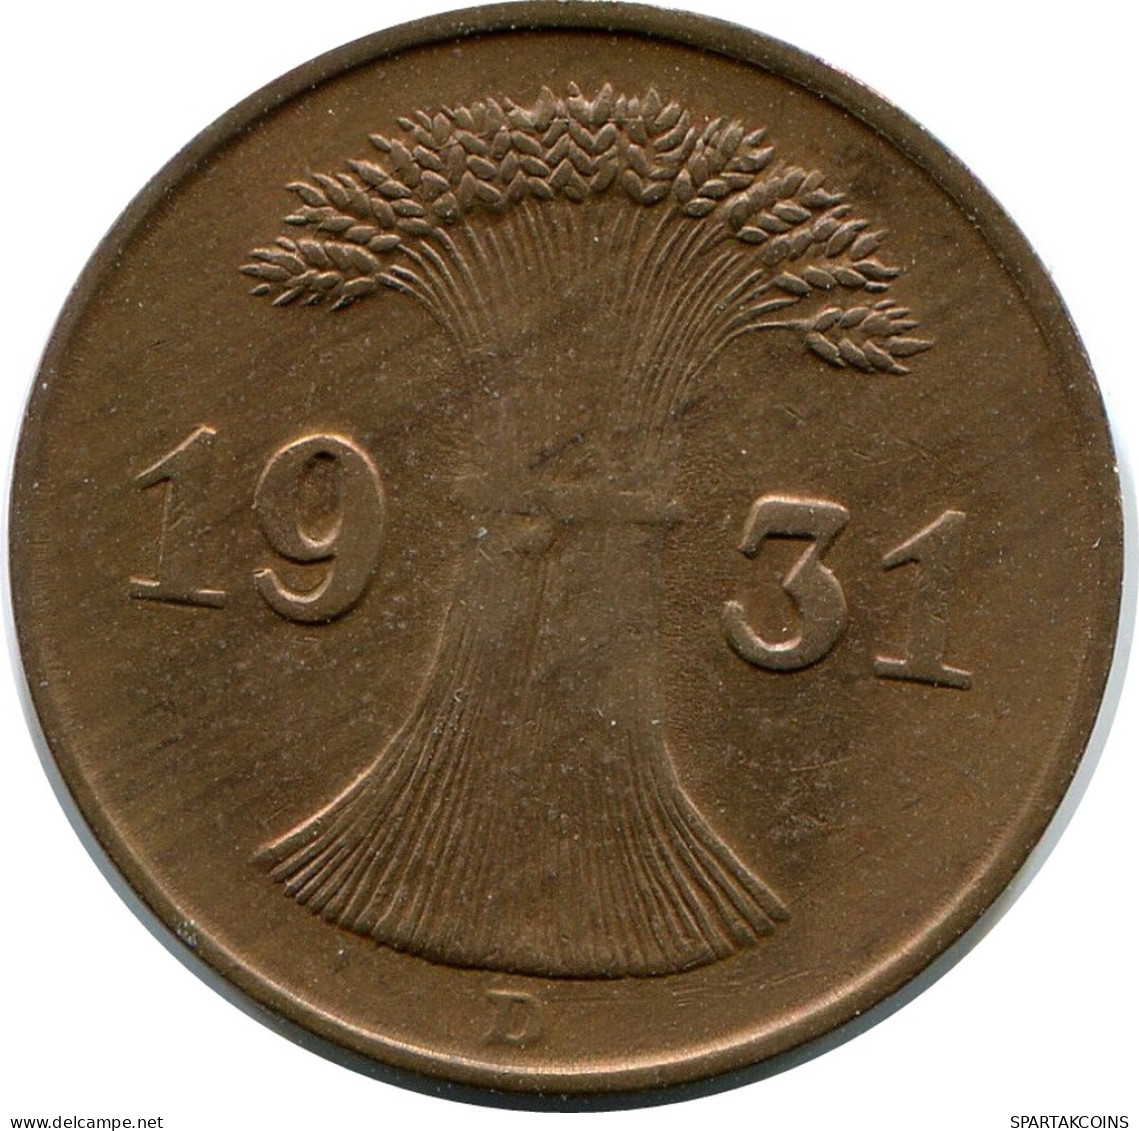 1 REICHSPFENNIG 1931 D ALEMANIA Moneda GERMANY #DB790.E - 1 Rentenpfennig & 1 Reichspfennig